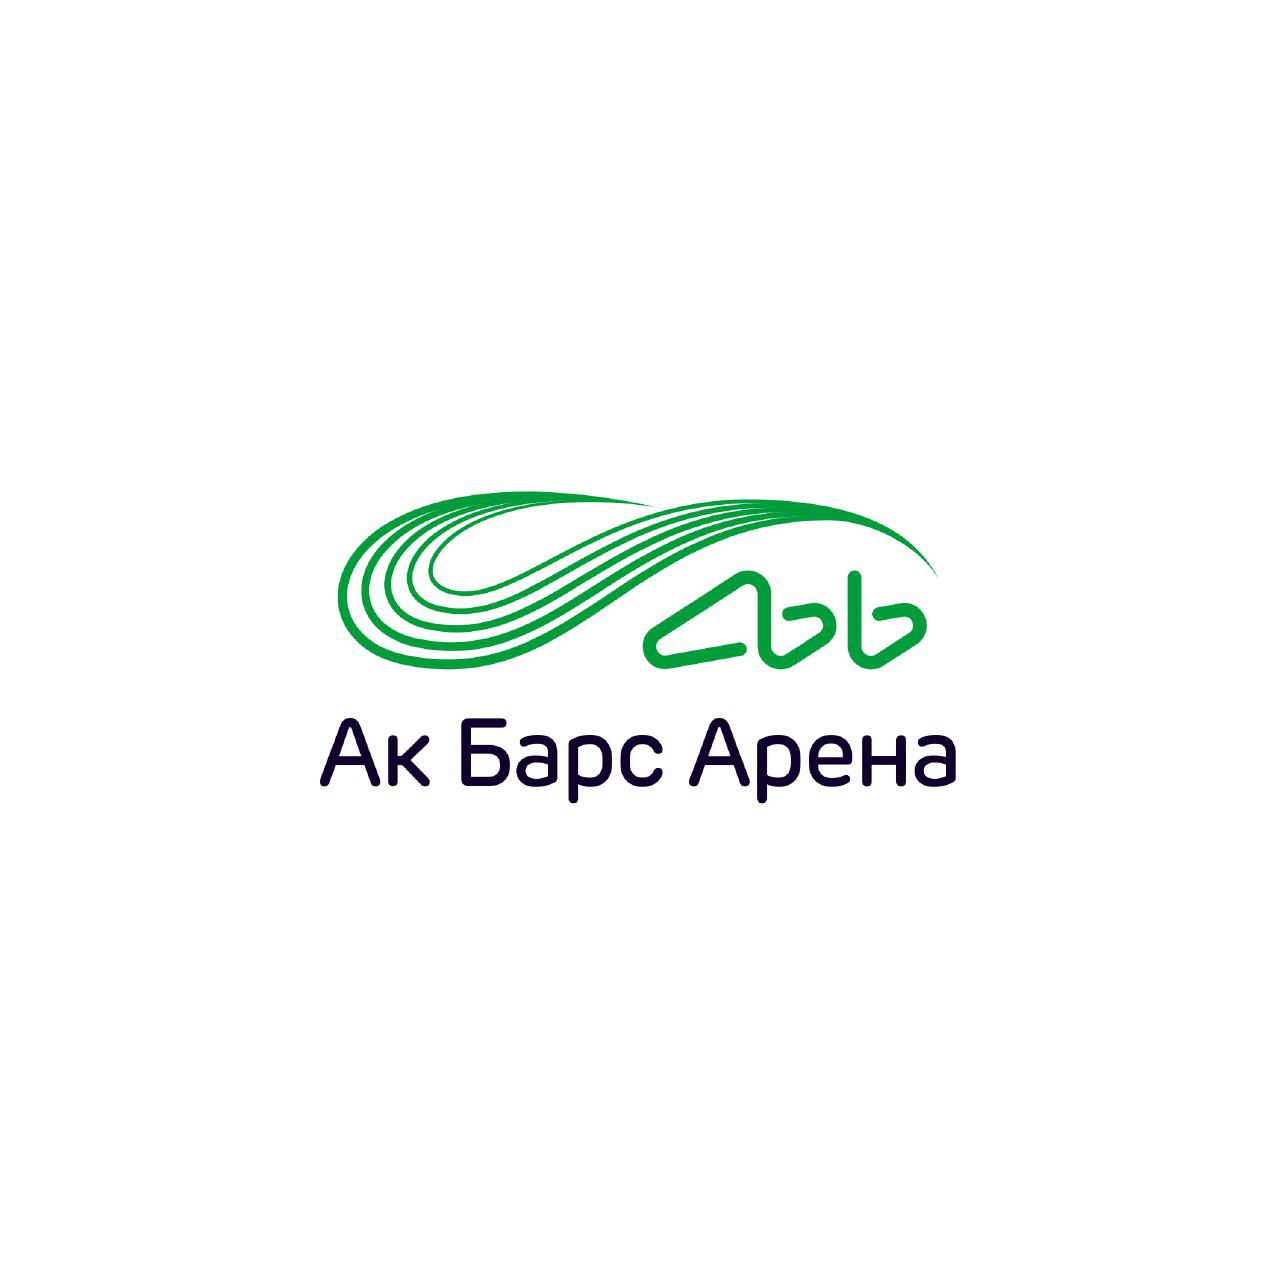 Ак Барс Банк утвердил новый логотип и название Ак Барс Арены